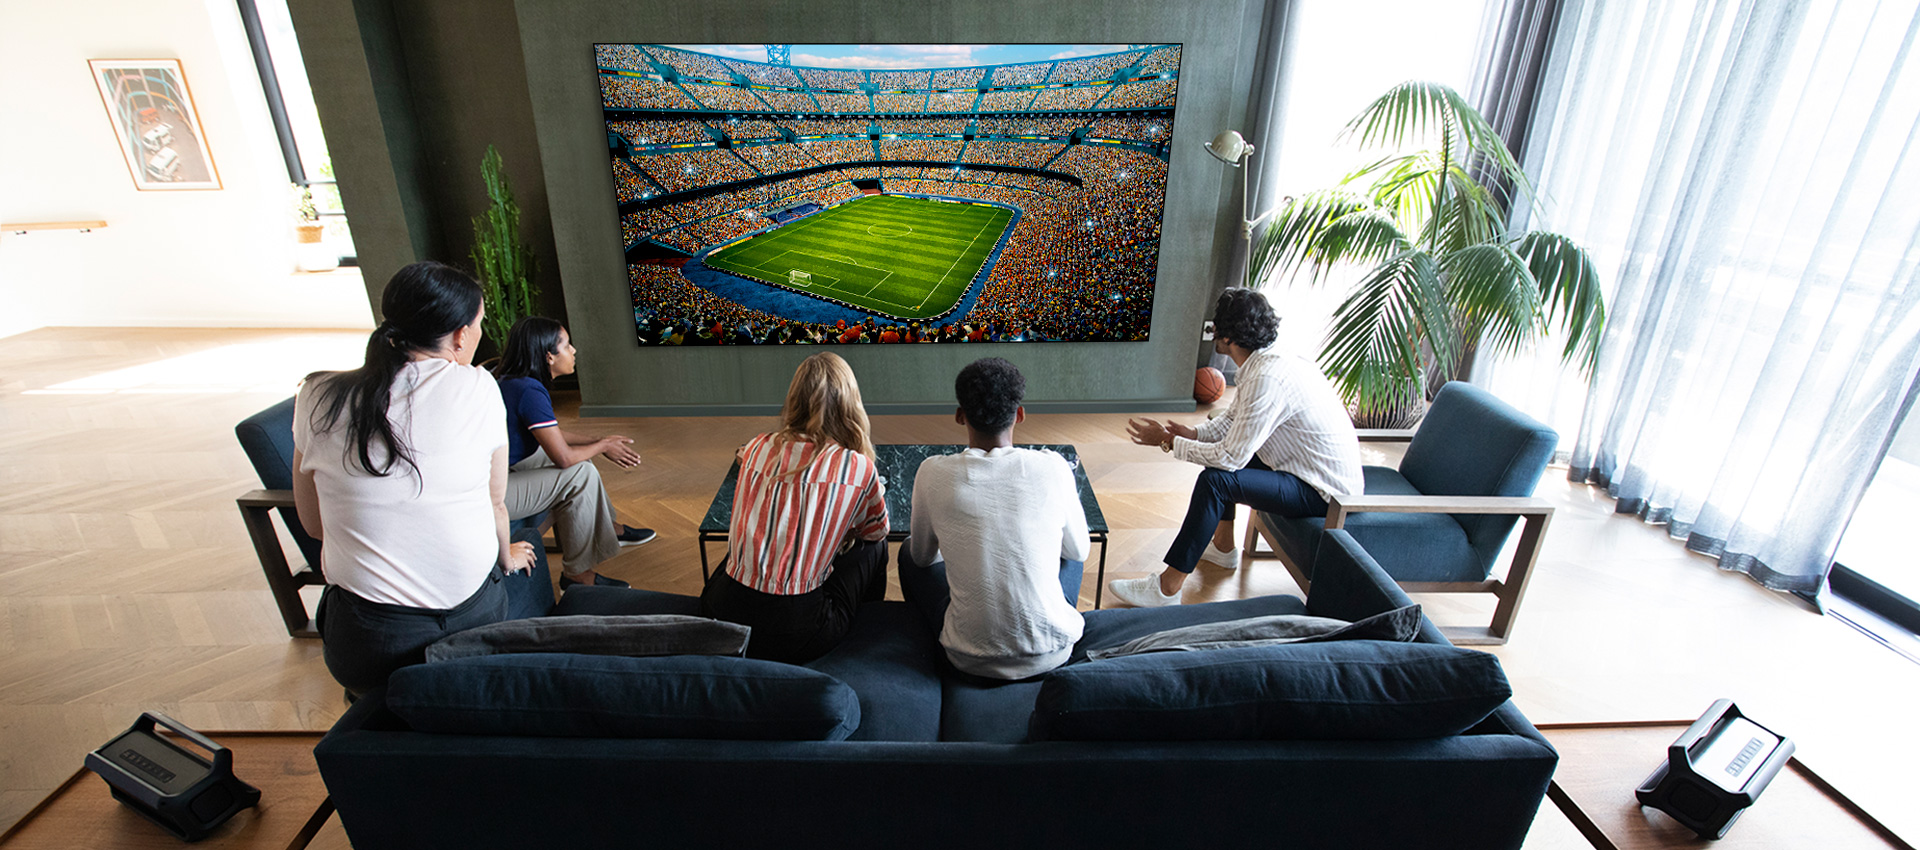 Grupa przyjaciół oglądająca sport w telewizji w pokoju dziennym z dwoma takimi samymi głośnikami tylnymi Bluetooth